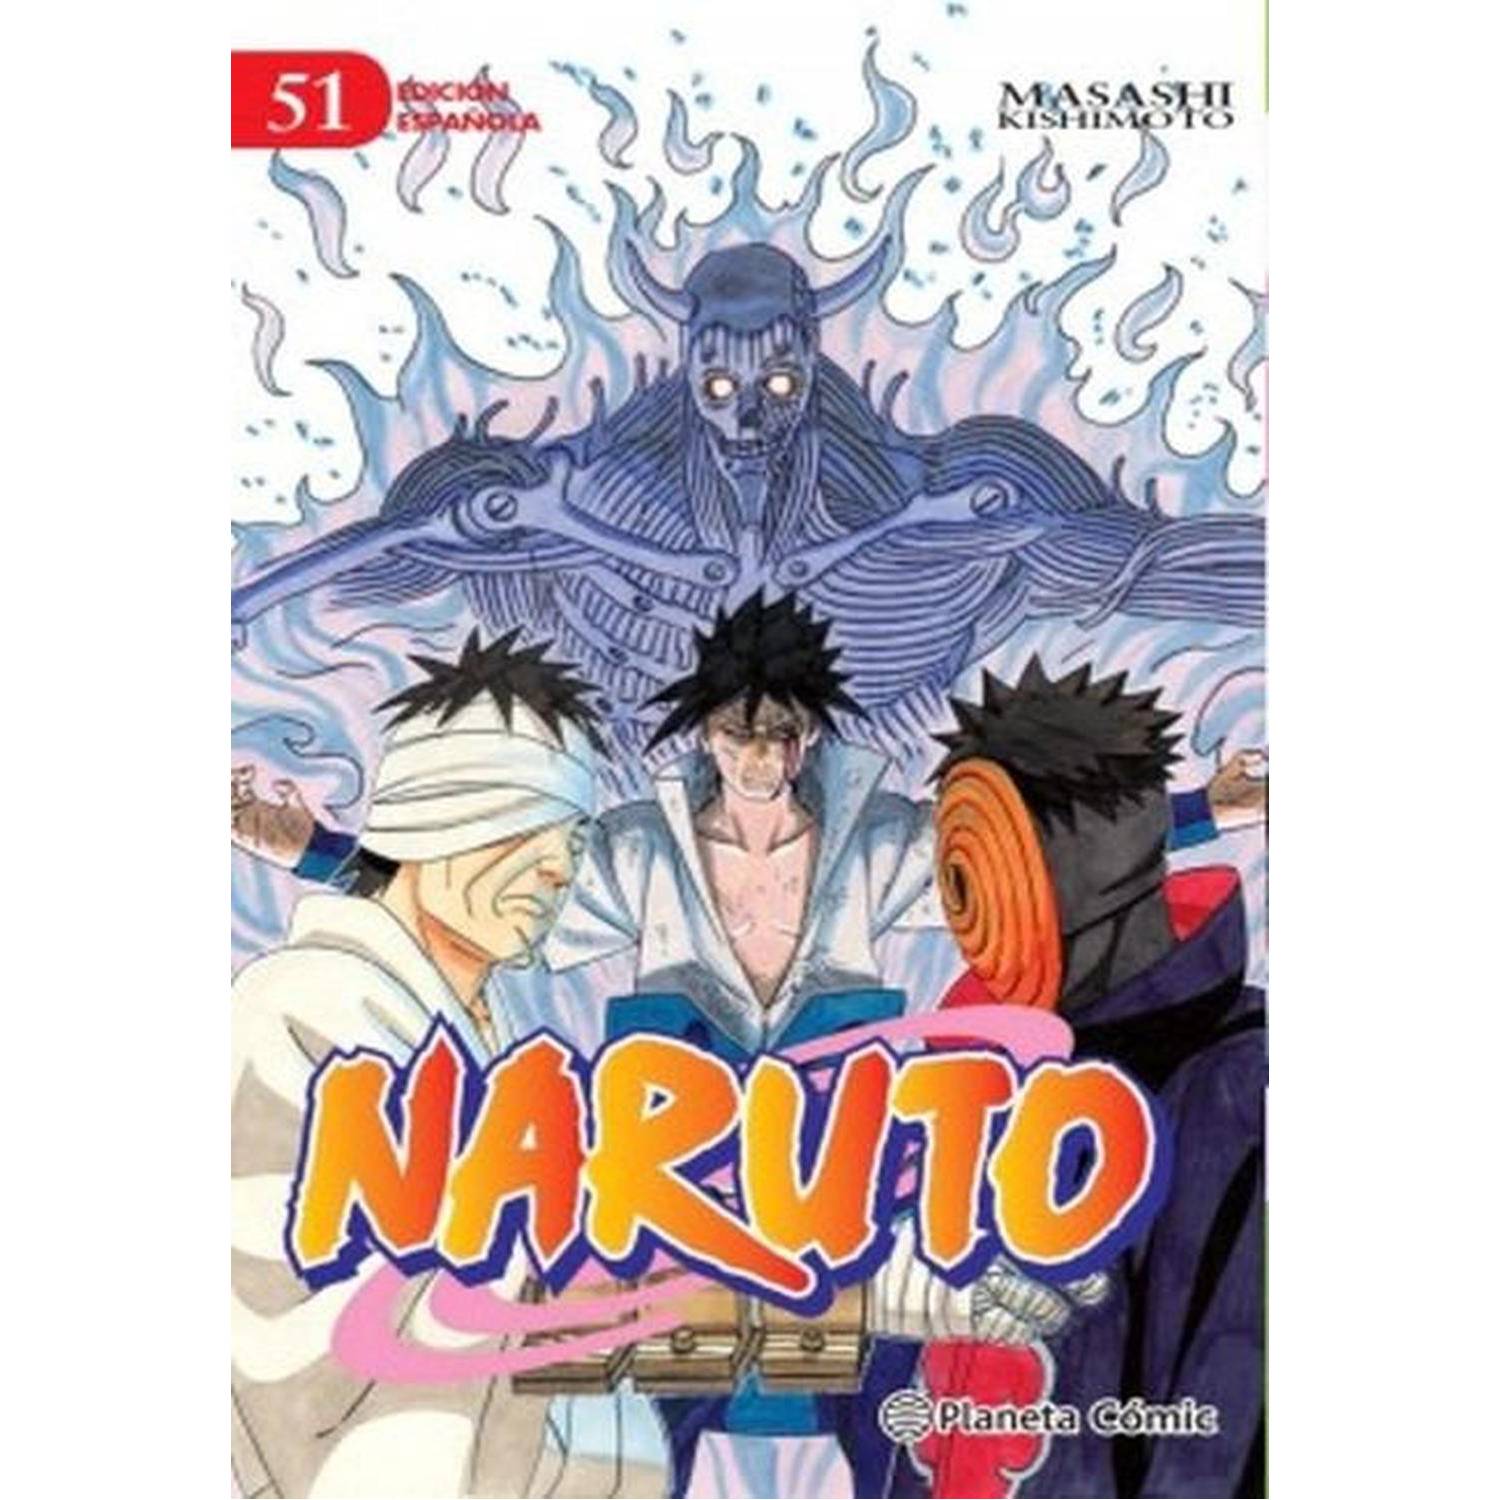 Naruto Capítulo 51 Español Latino